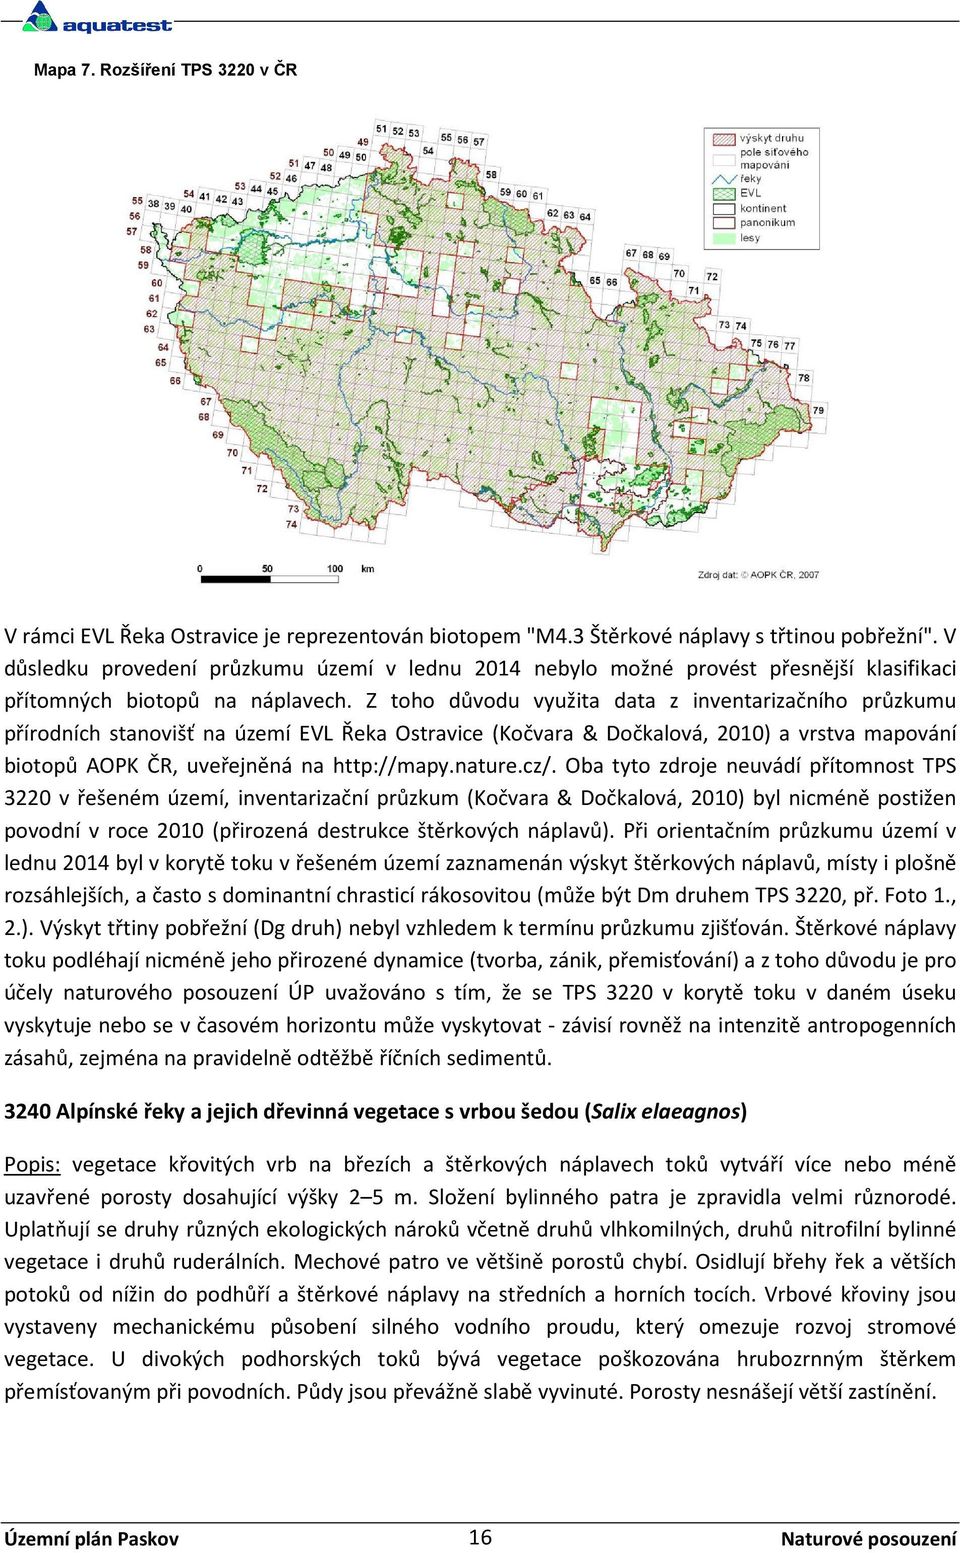 Z toho důvodu využita data z inventarizačního průzkumu přírodních stanovišť na území EVL Řeka Ostravice (Kočvara & Dočkalová, 2010) a vrstva mapování biotopů AOPK ČR, uveřejněná na http://mapy.nature.